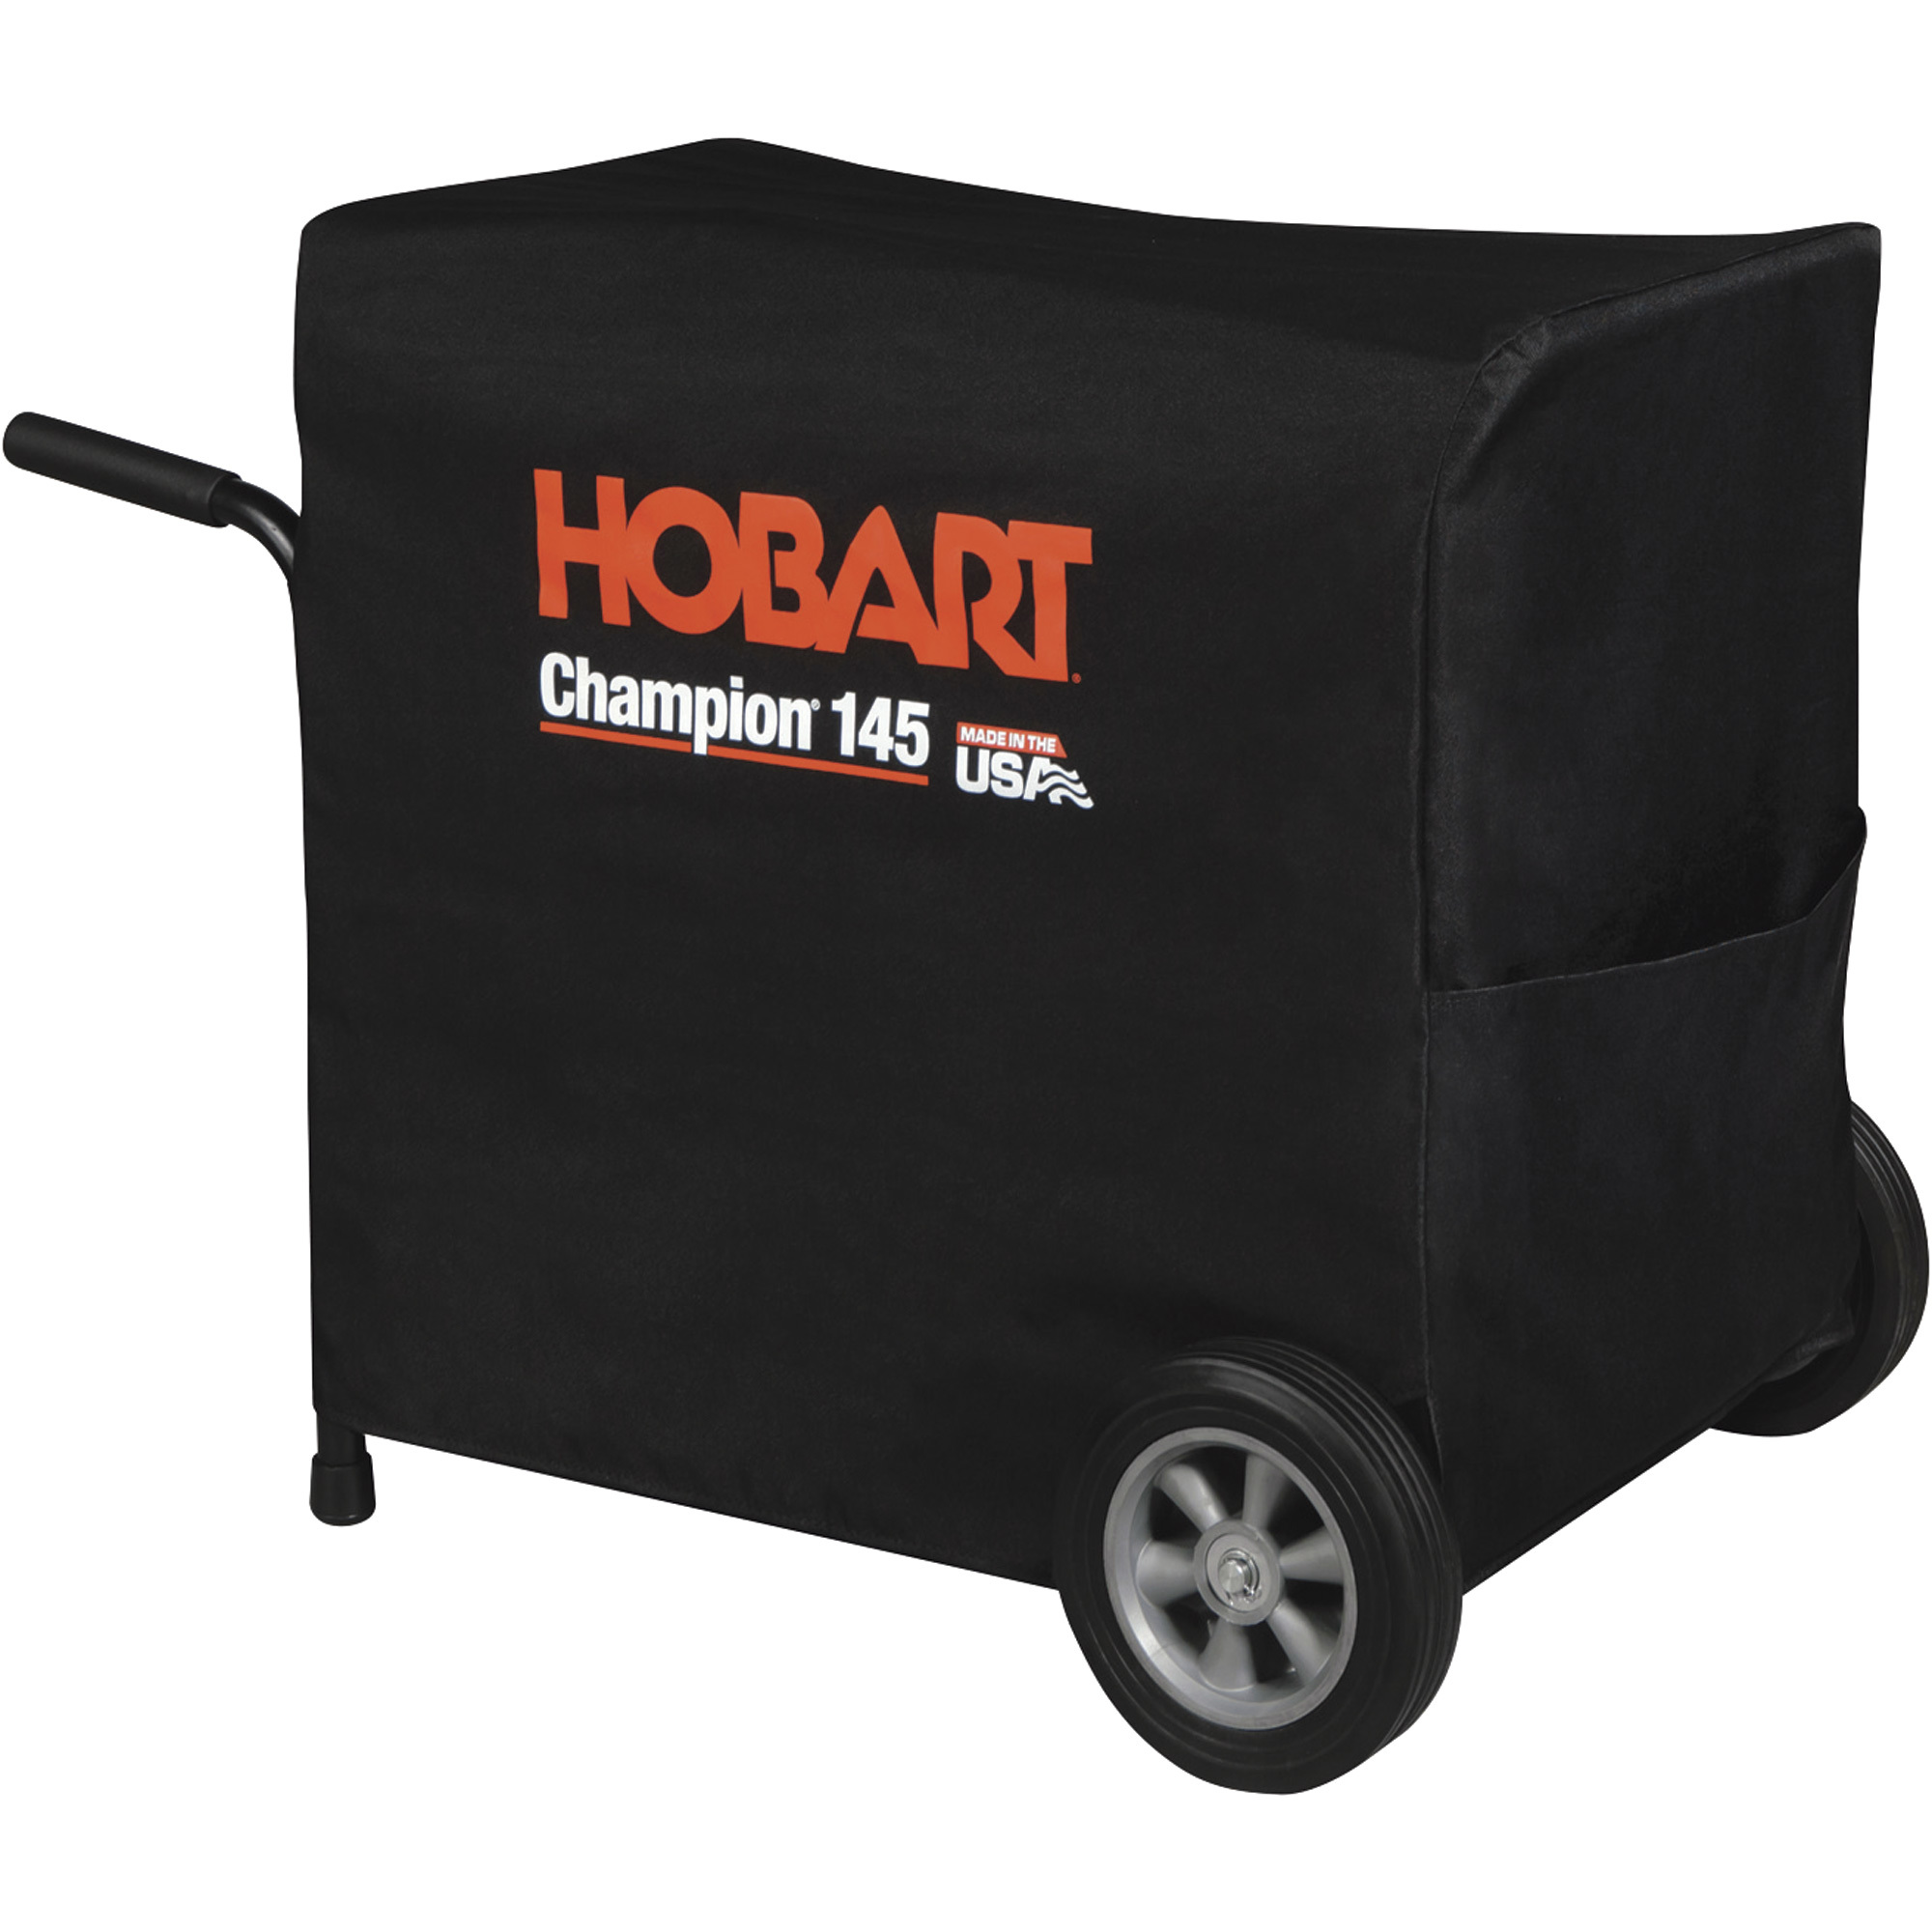 Hobart Welder Generator Cover â Fits Hobart Champion 145, Model 770714